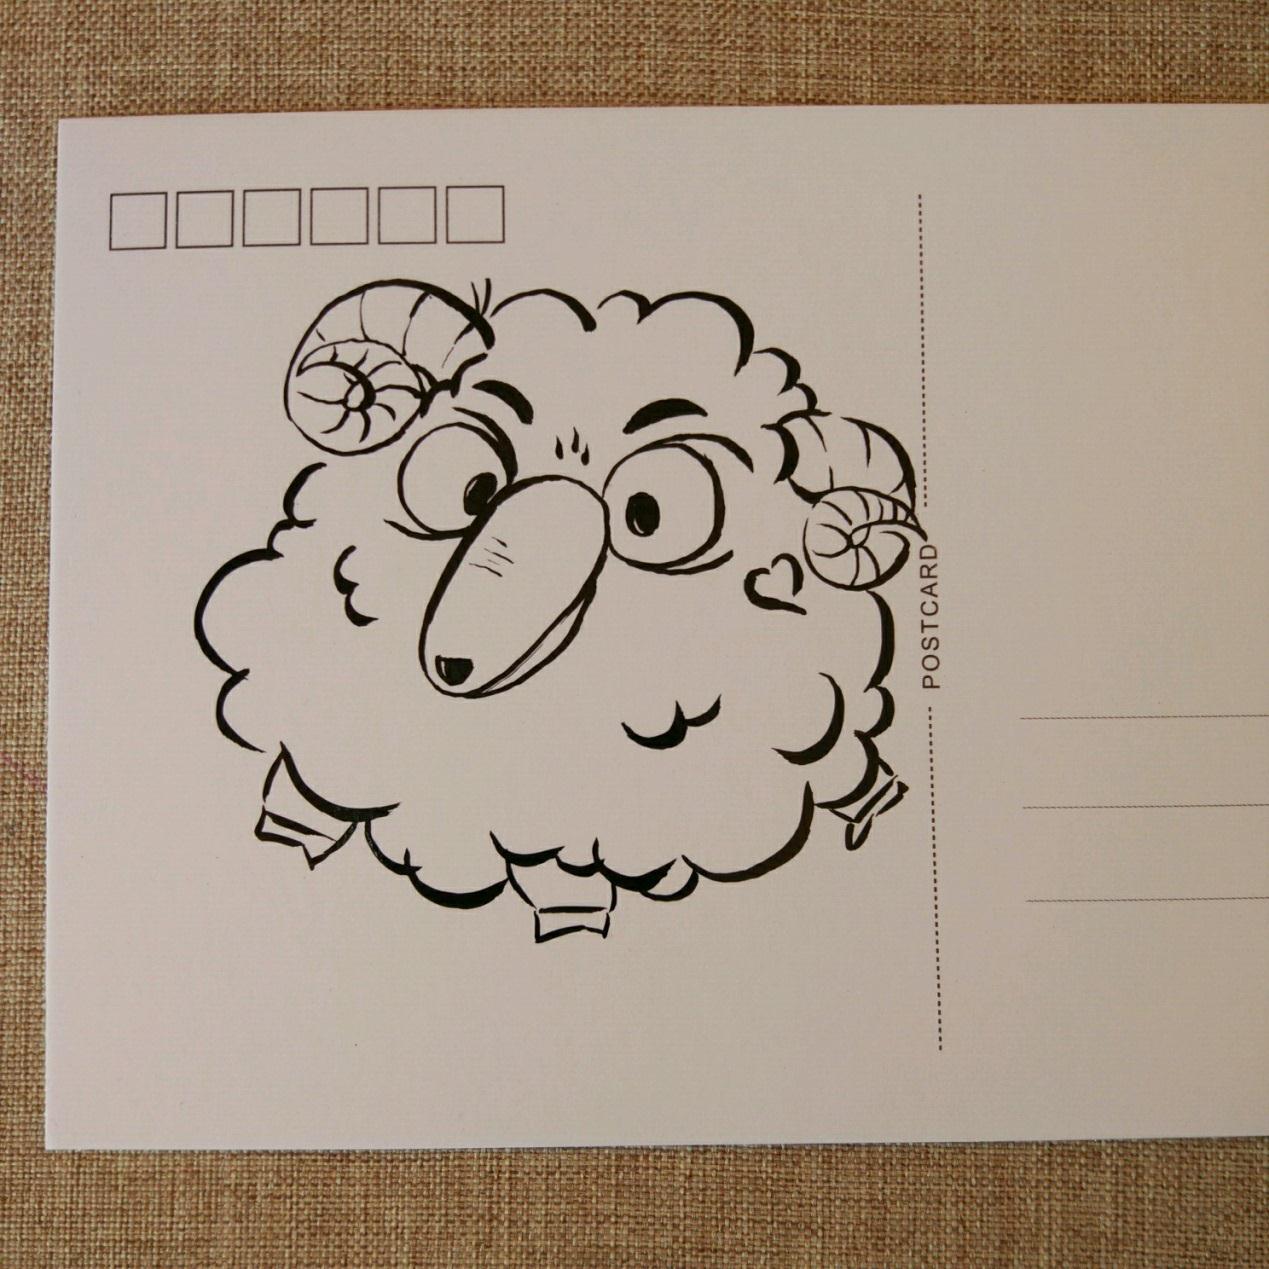 宋宋教你绘制可爱的小绵羊手绘明信片 DIY原创手绘漫画